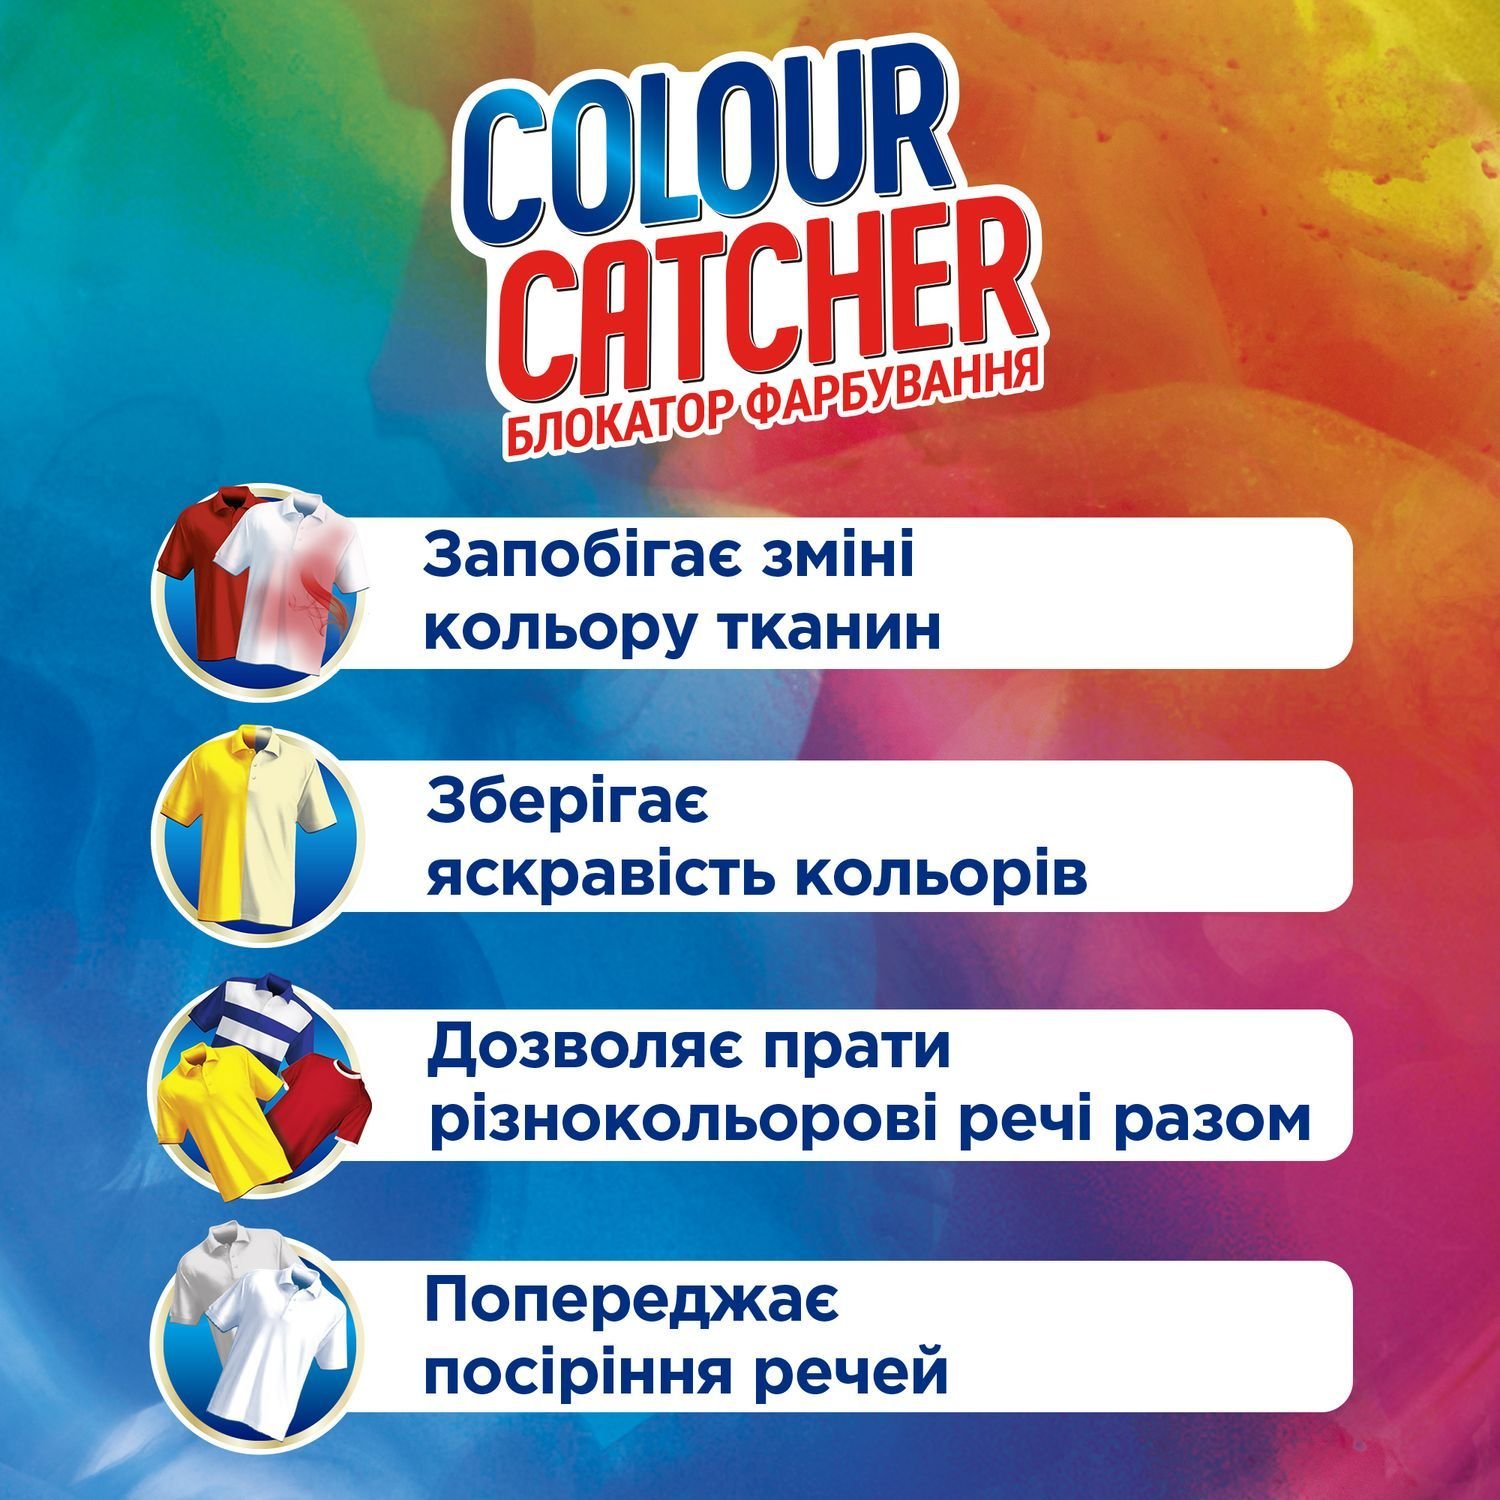 Салфетки для стирки K2r Colour Catcher цветопоглощение, 5 шт. - фото 4